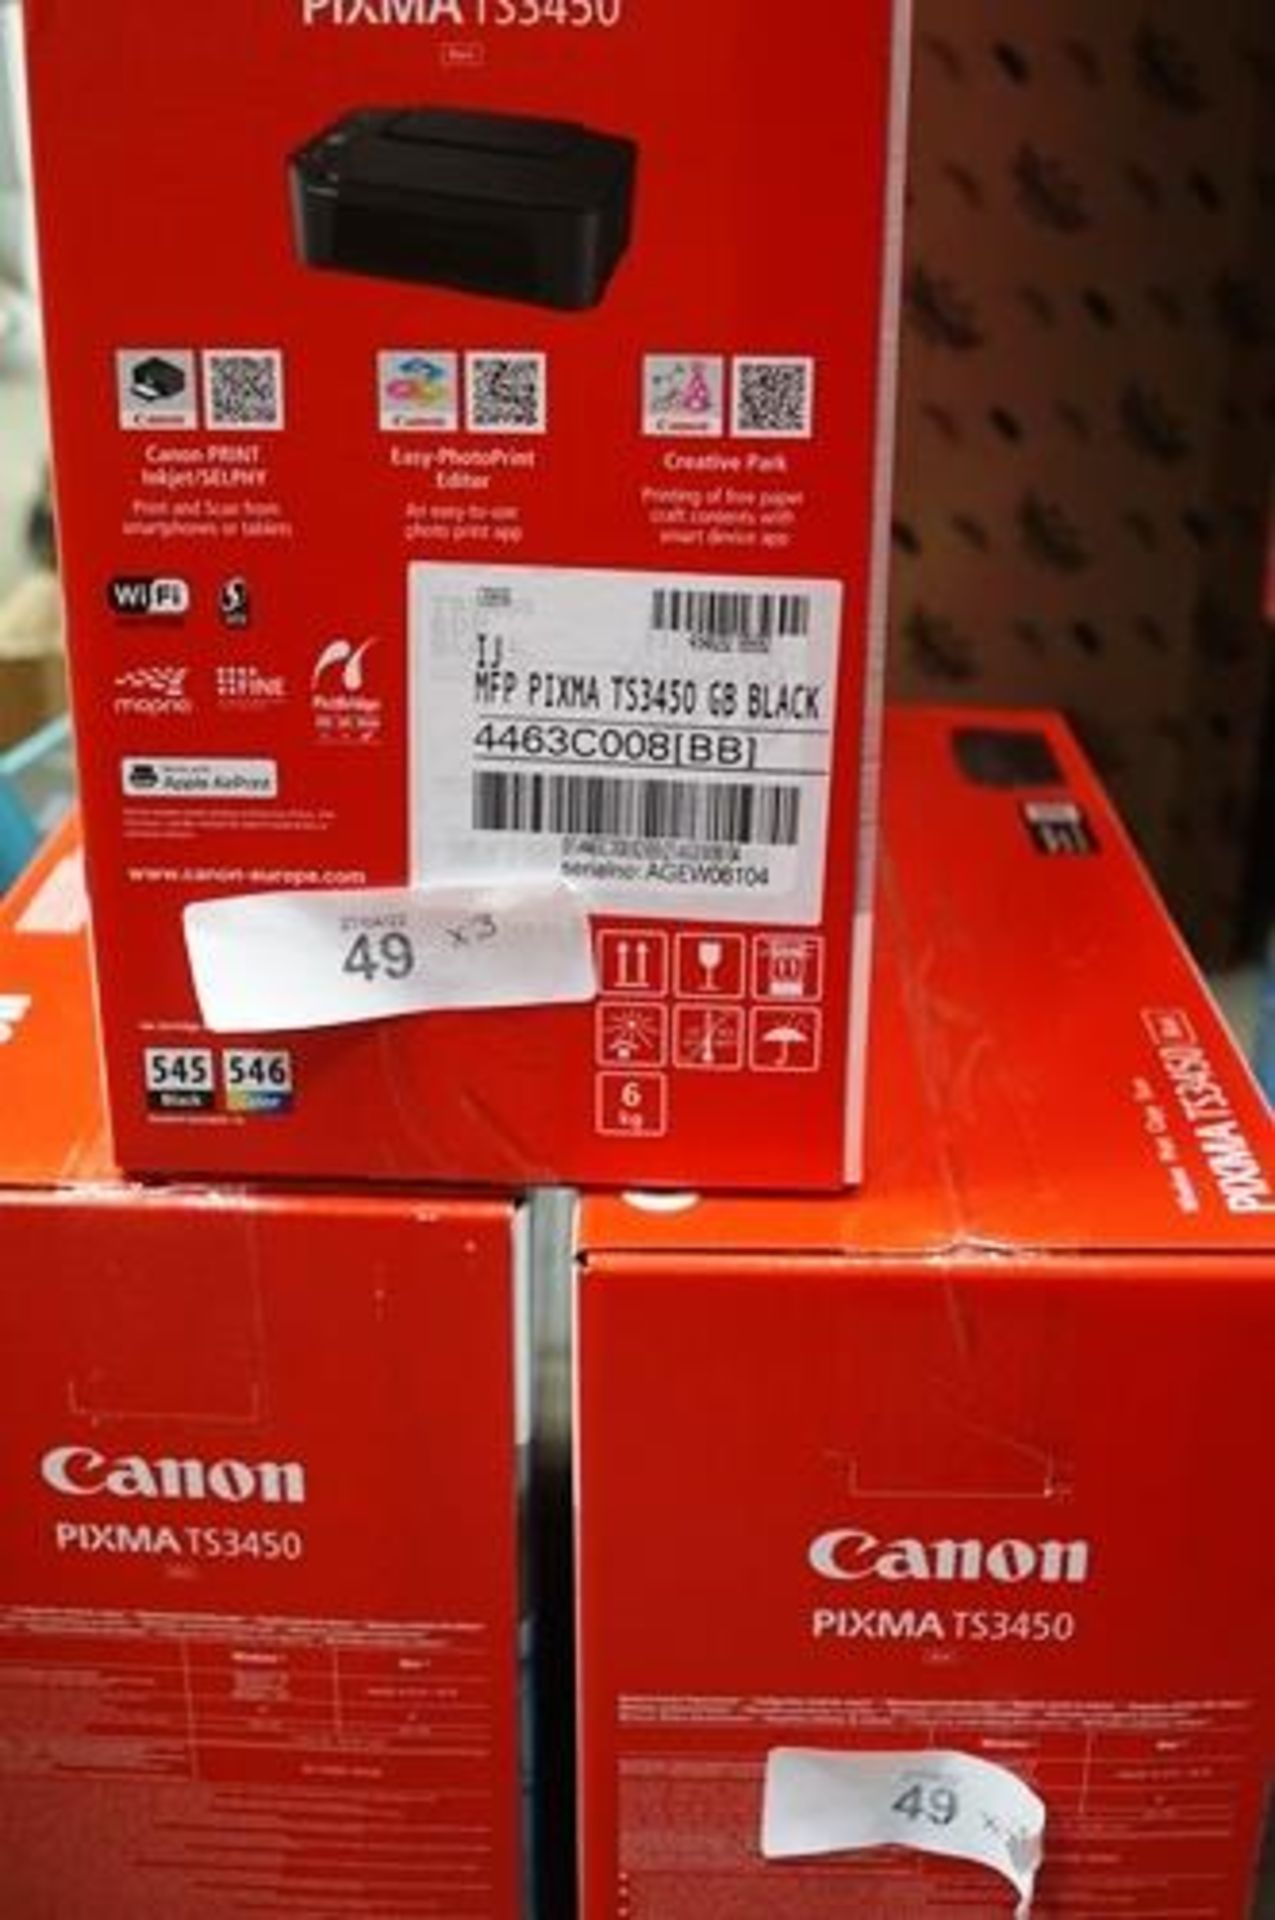 3 x Canon Pixma TS3450 printers - Sealed new in box (ES8)